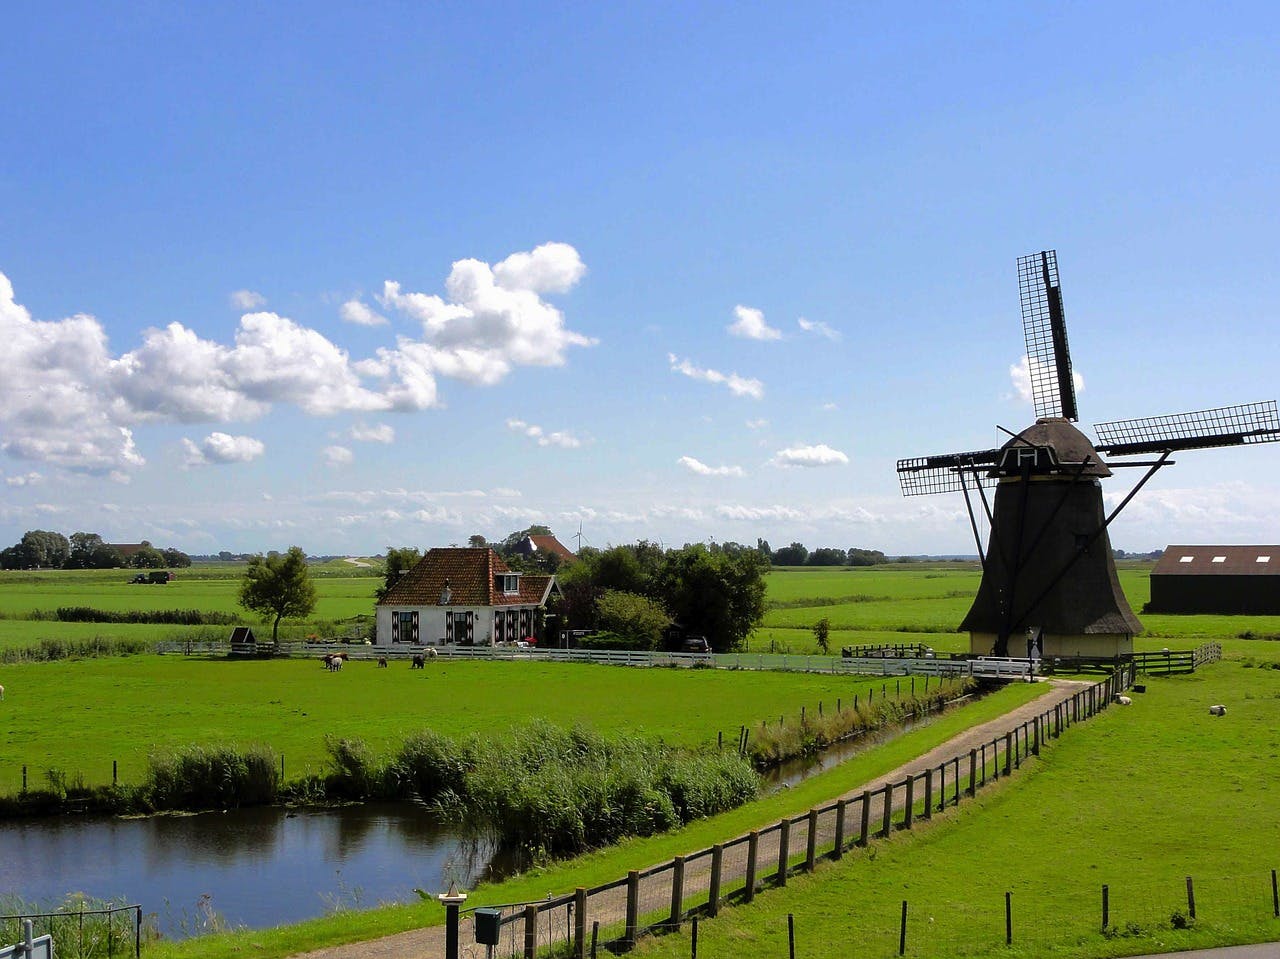 Información sobre el país de Campercontact - Molinos en el paisaje holandés